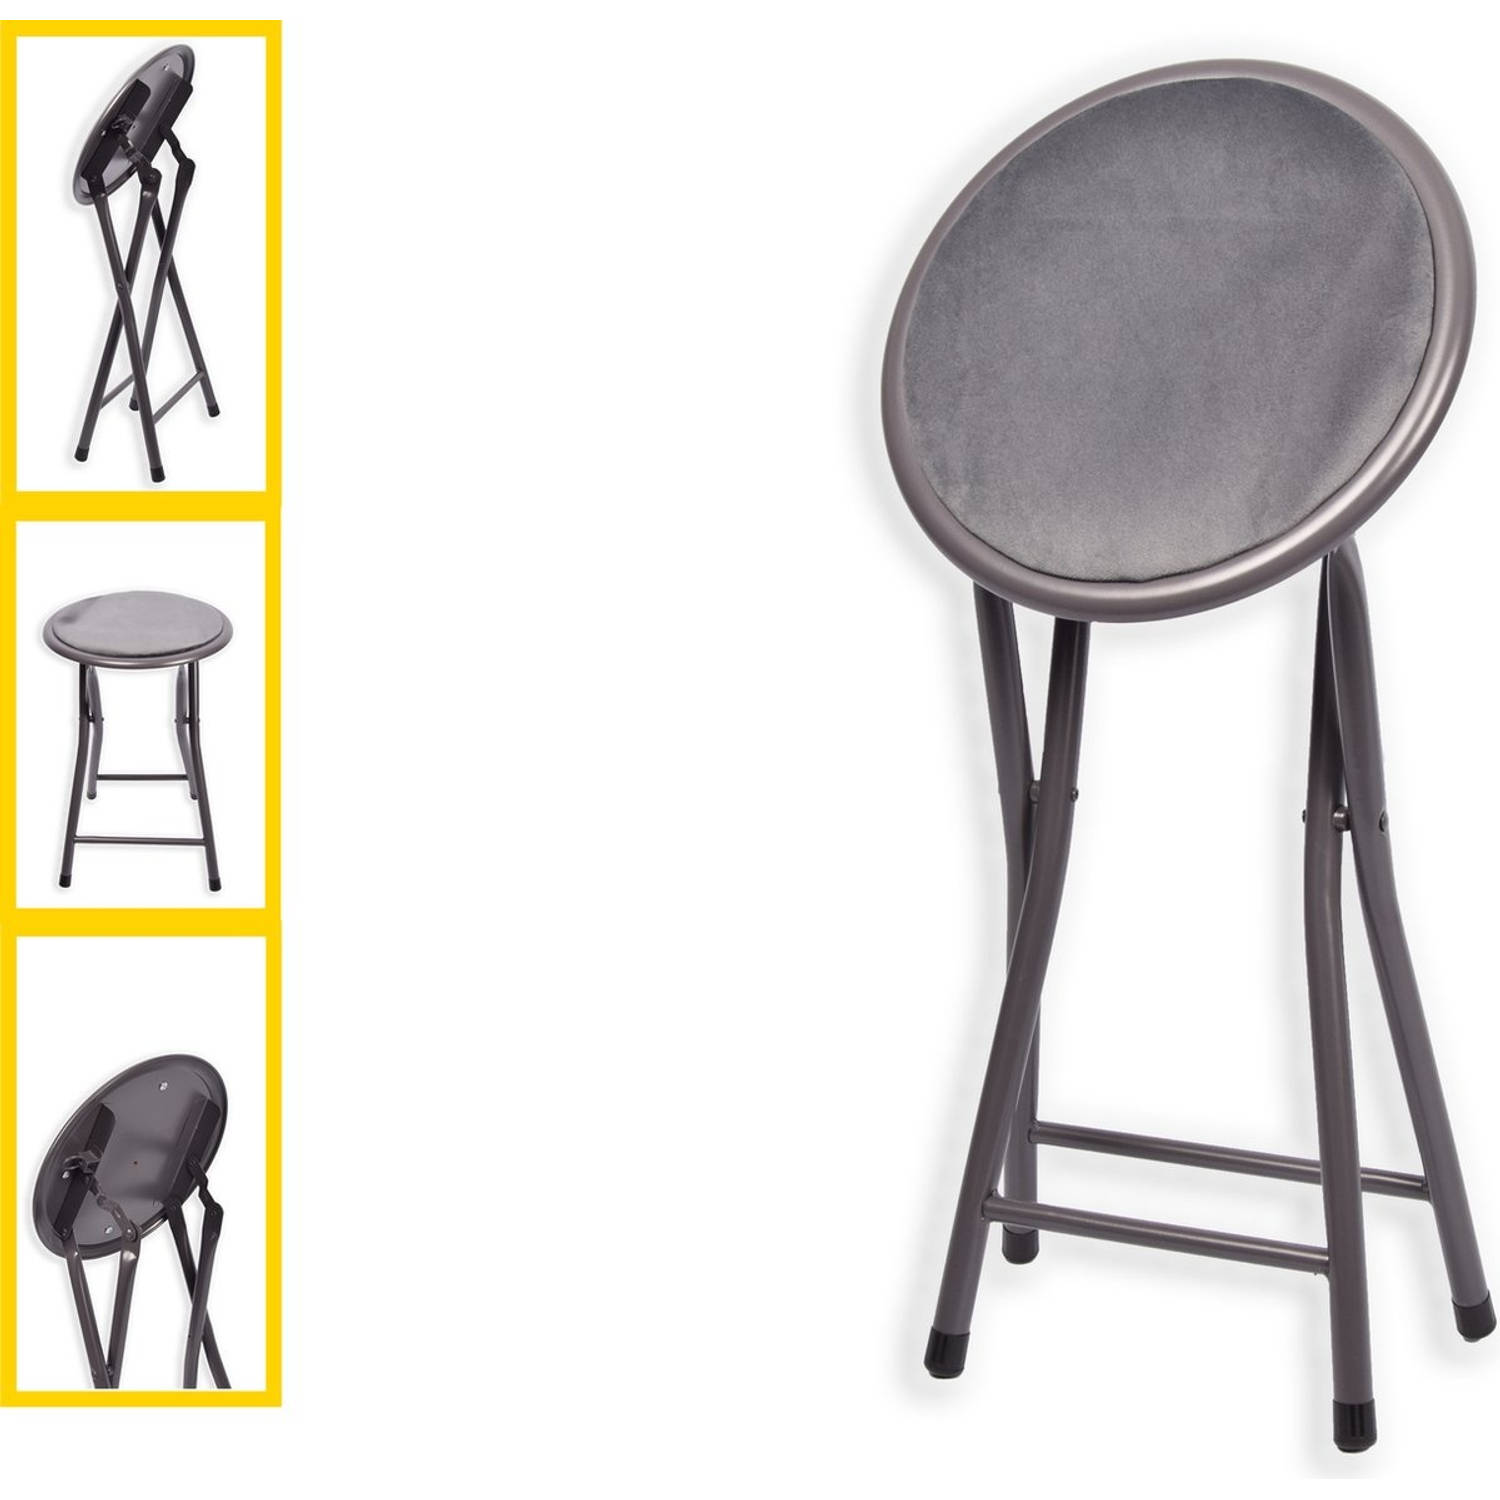 Klapstoel met zithoogte van 45 cm - Vouwkrukje velvet zitvlak en rug bekleed - stoel- tafelstoel - klapstoel - Velvet klapstoel - Luxe klapstoel - Met kussentjes - FLUWEEL- Stoelen